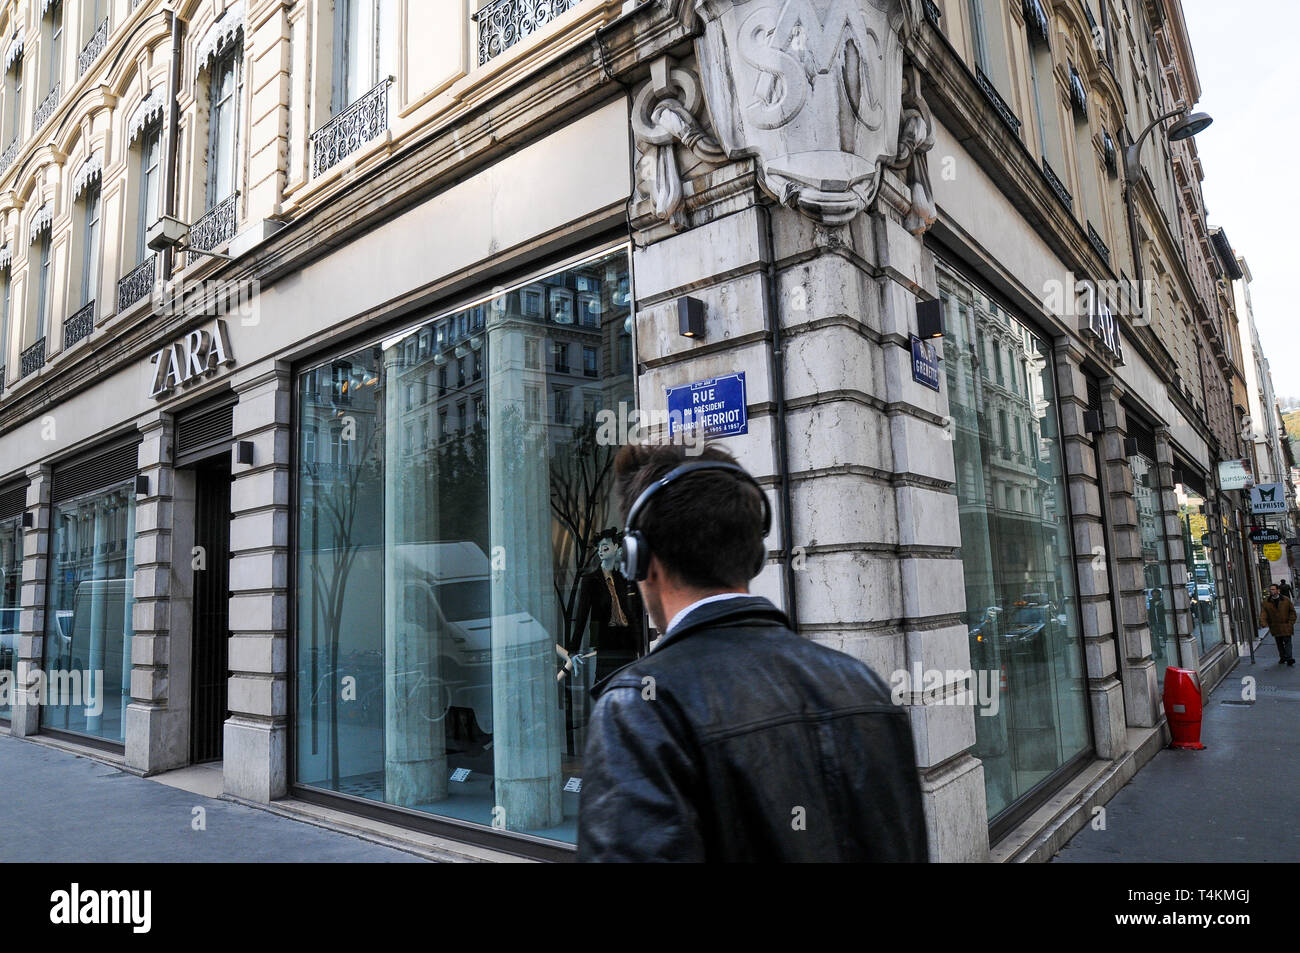 Zara fashion shop, Lyon, France Stock Photo - Alamy